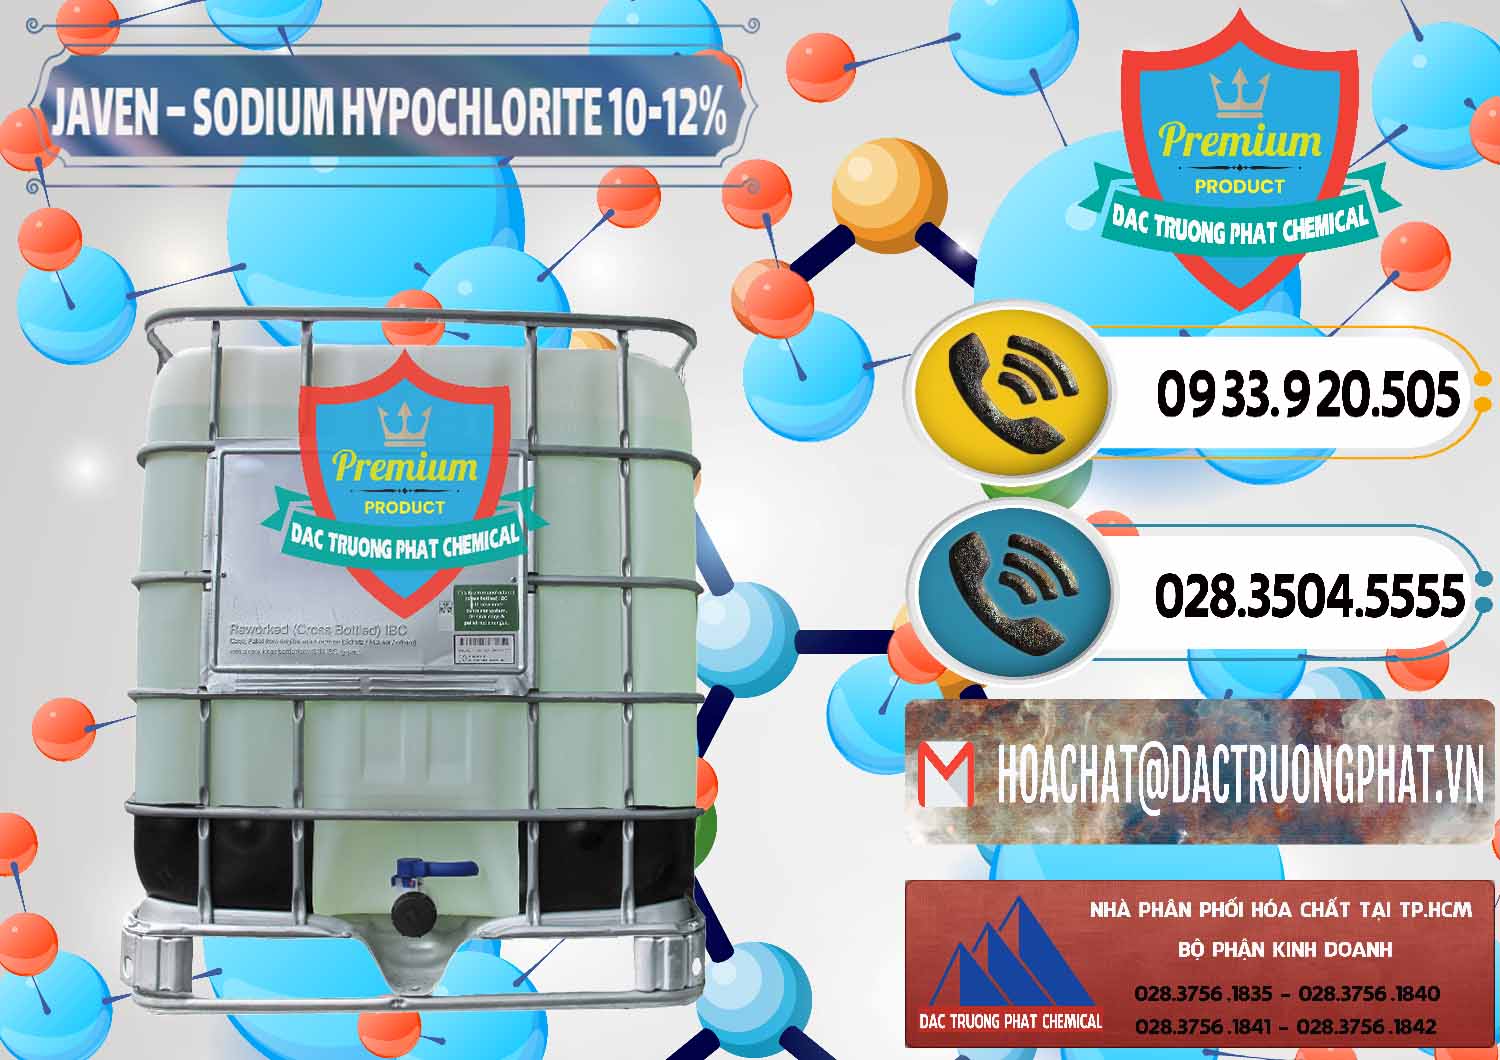 Công ty phân phối và cung ứng Javen - Sodium Hypochlorite 10-12% Việt Nam - 0188 - Bán và phân phối hóa chất tại TP.HCM - hoachatdetnhuom.vn